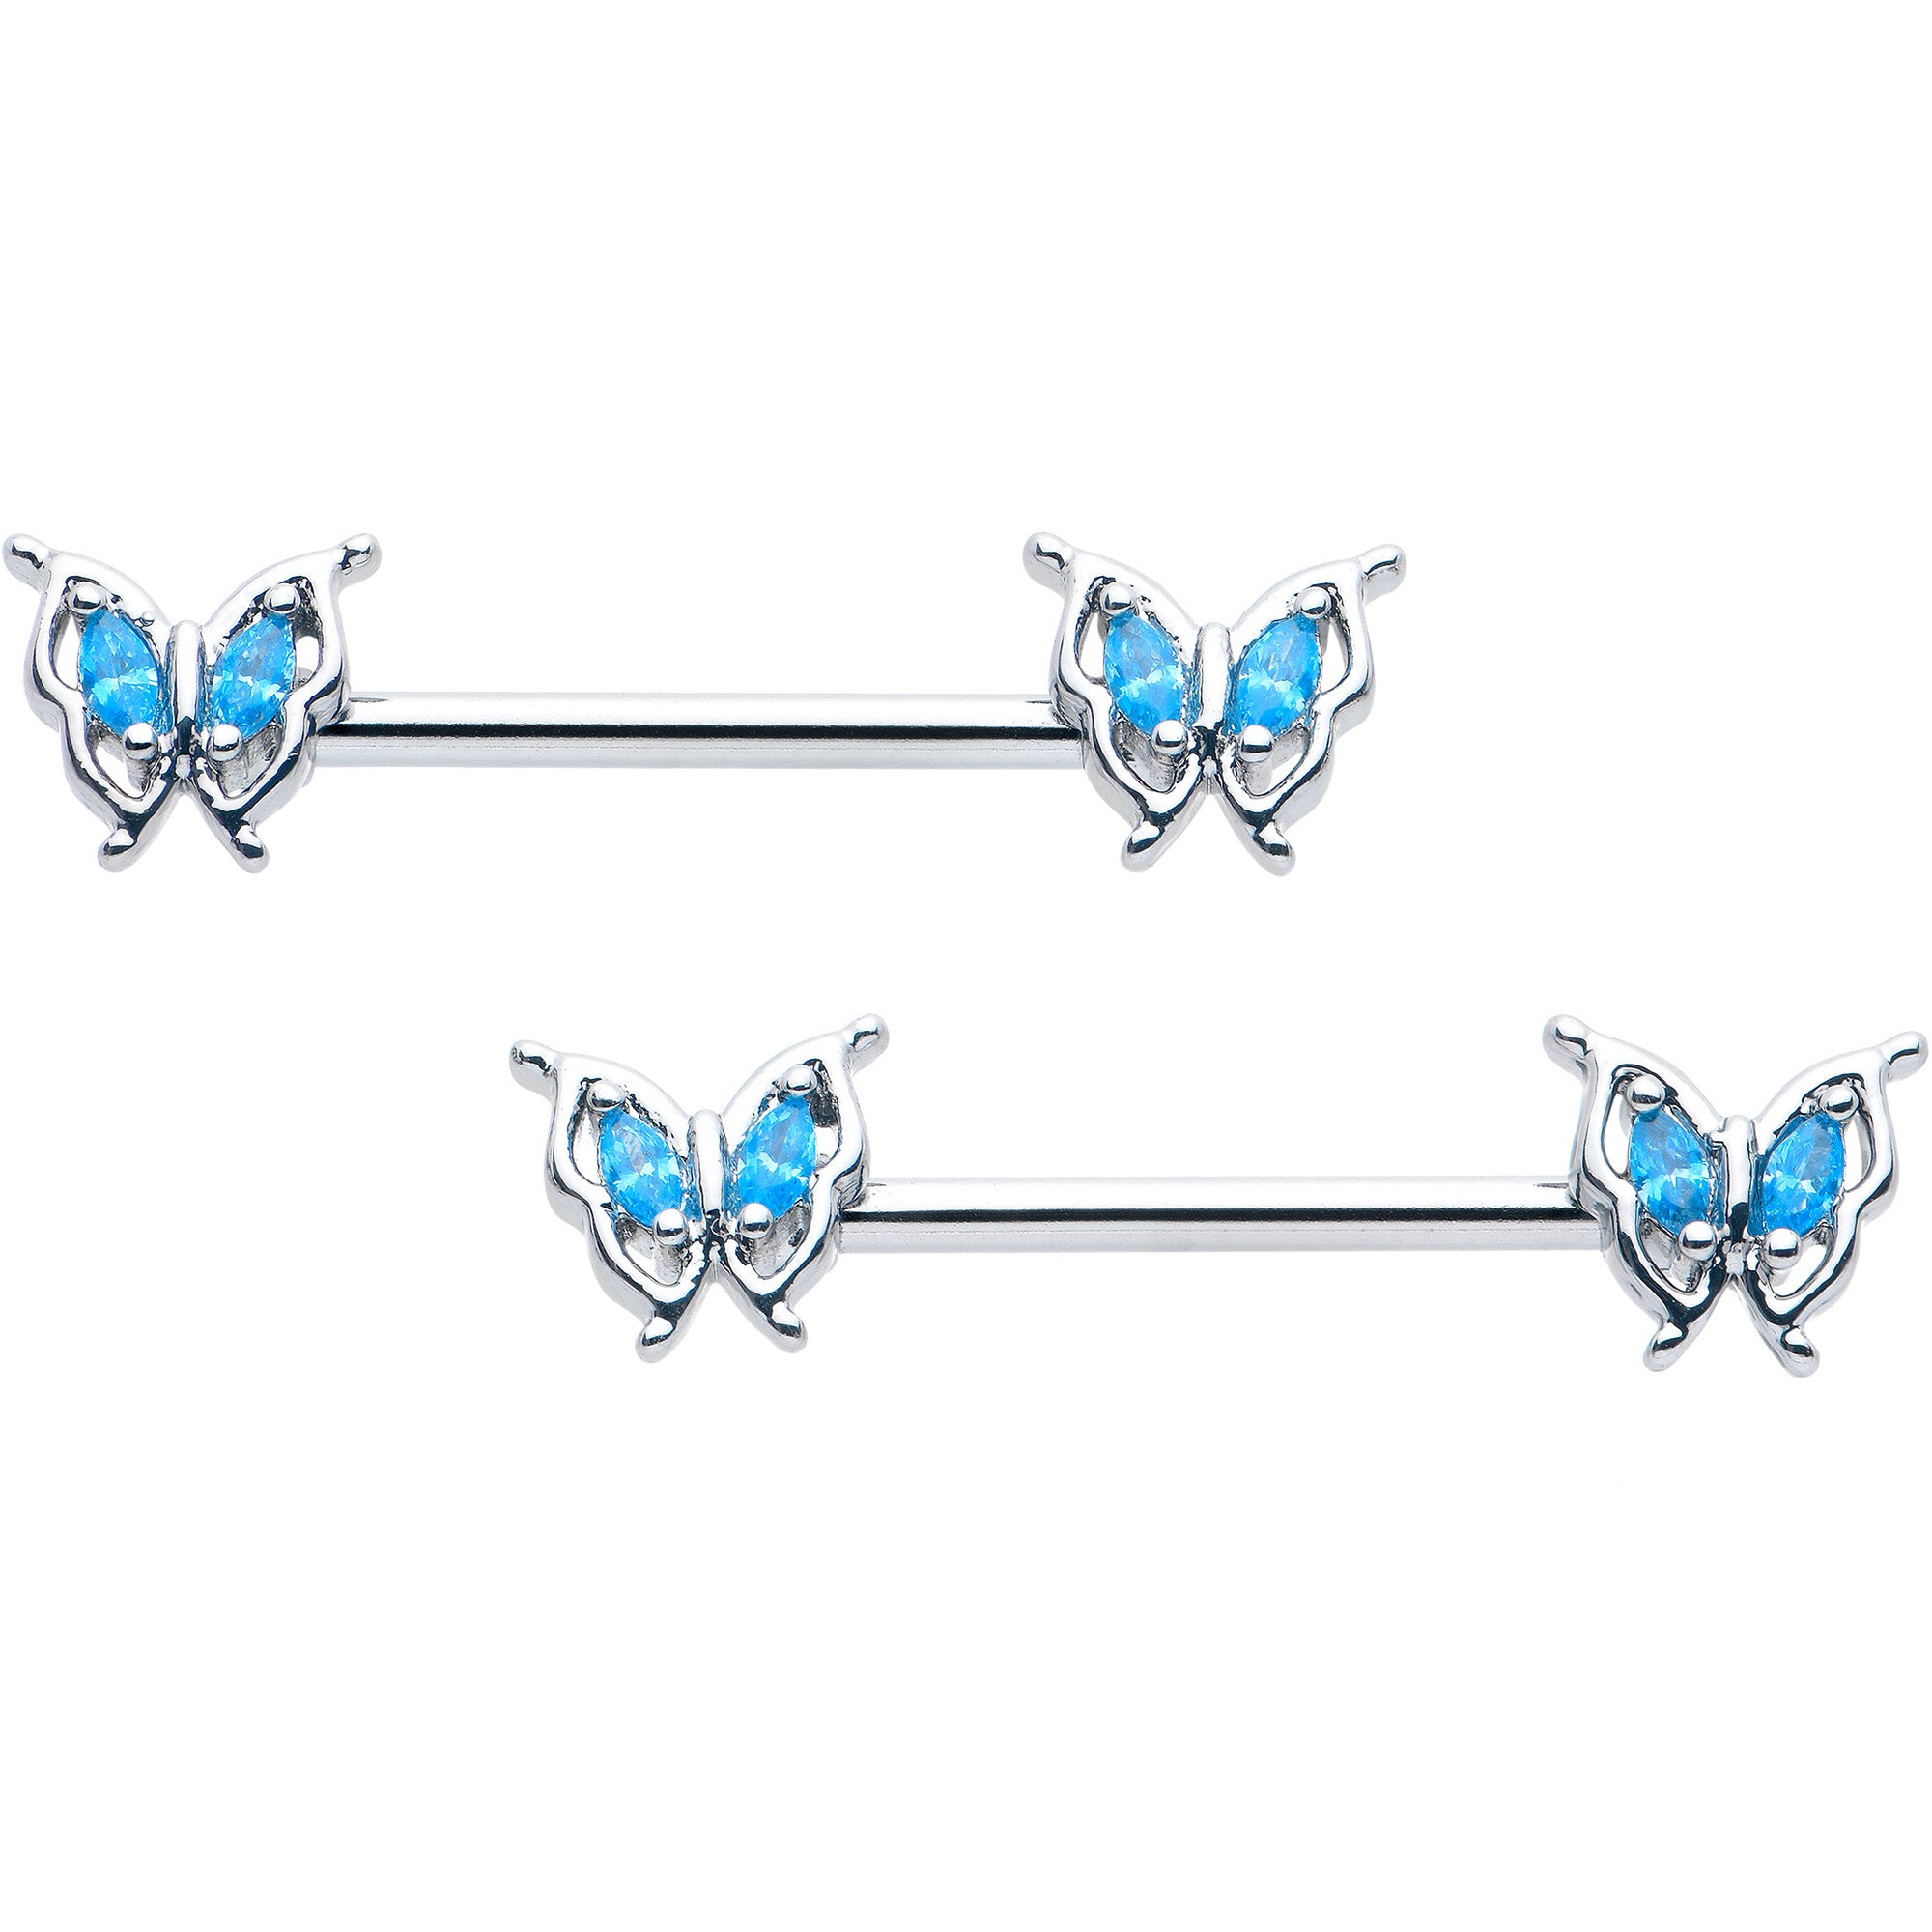 14 Gauge 9/16 Blue Gem Fancy Fab Butterfly Barbell Nipple Ring Set